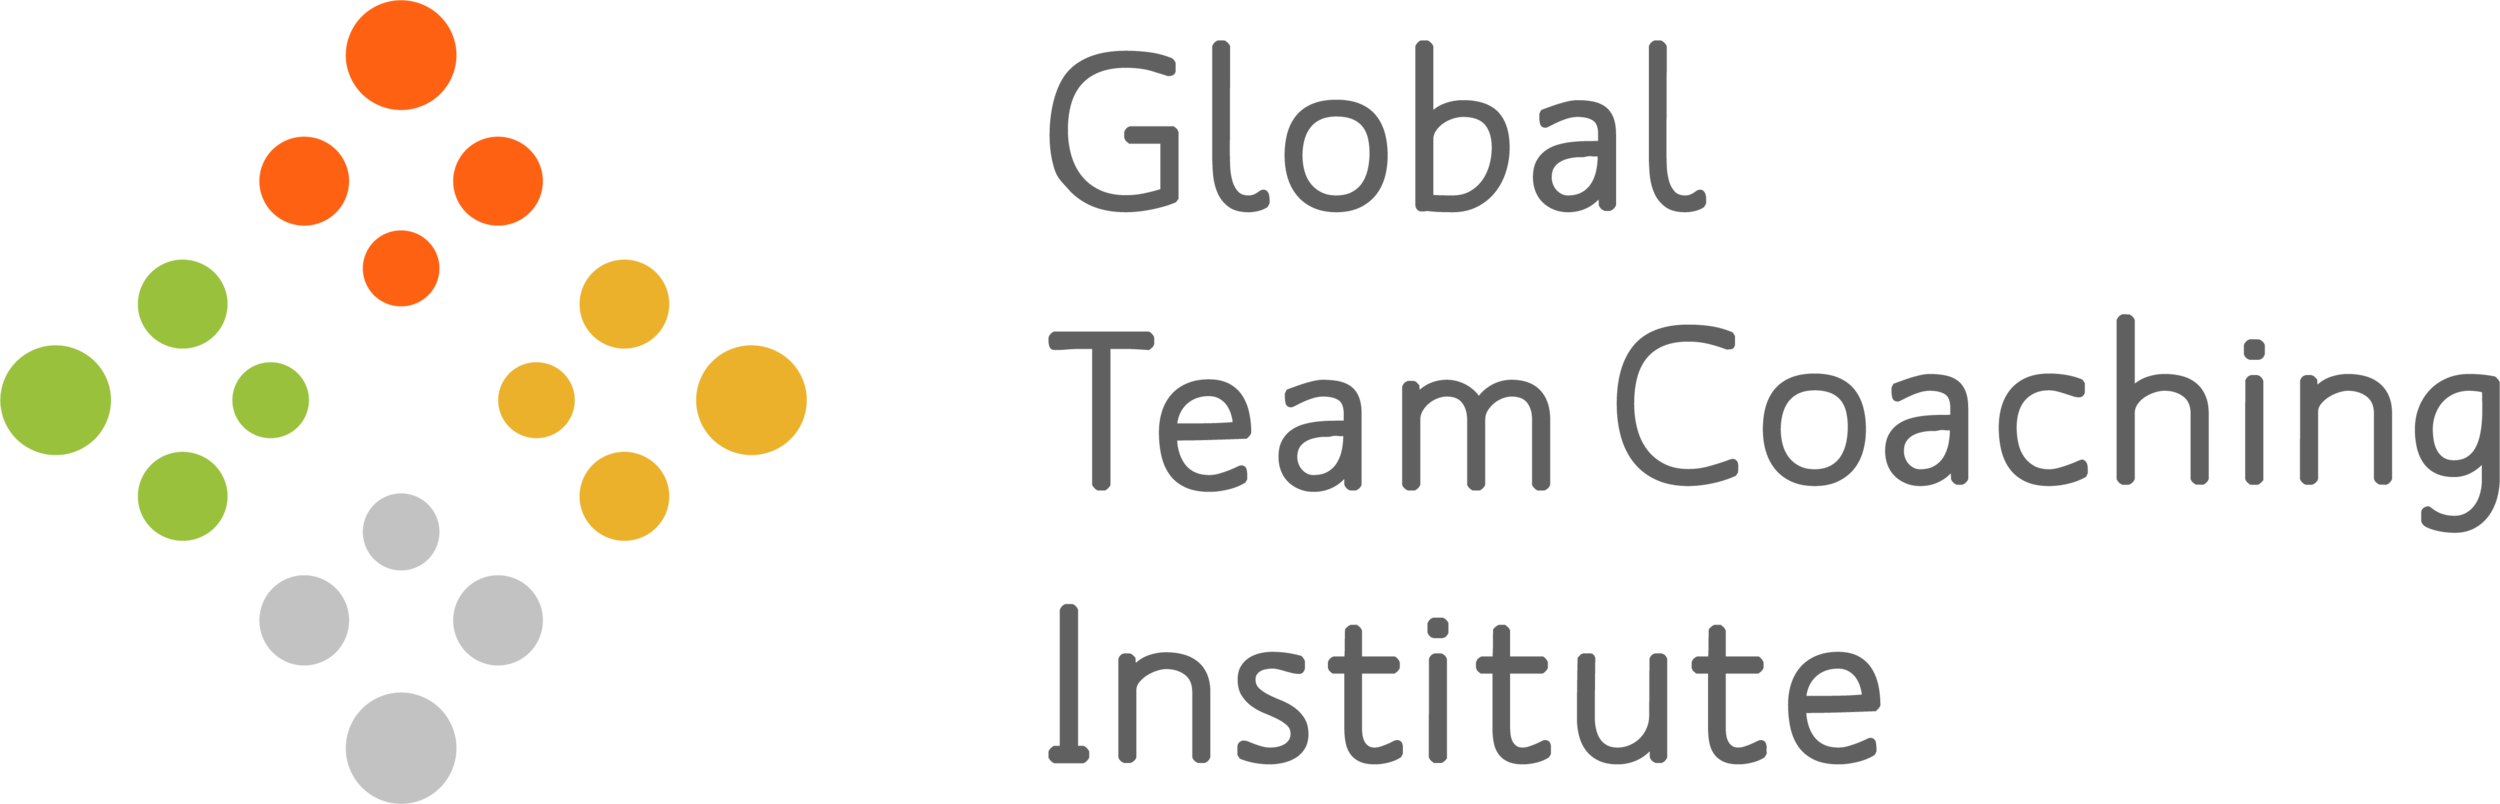 1 - GTCI - Global Team Coaching Institute - Logo.png